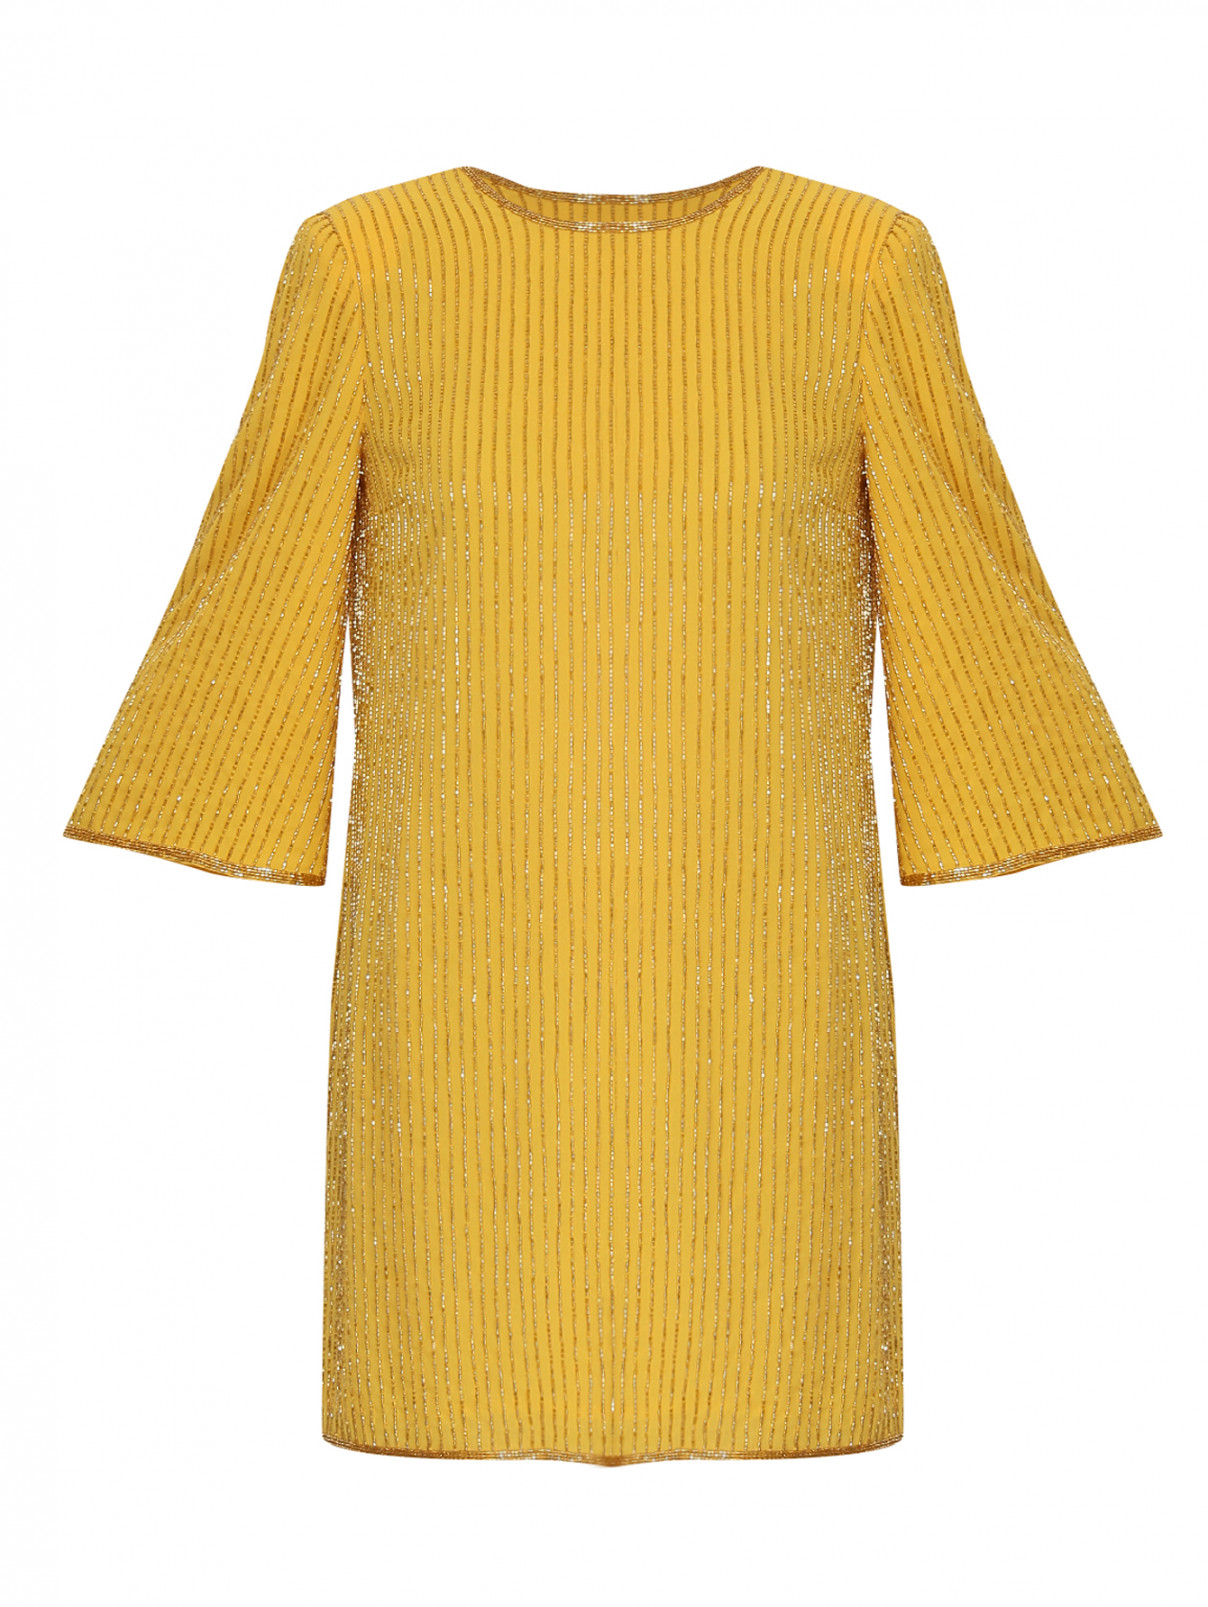 платье прямого кроя с вышивкой бисером Elisabetta Franchi  –  Общий вид  – Цвет:  Желтый